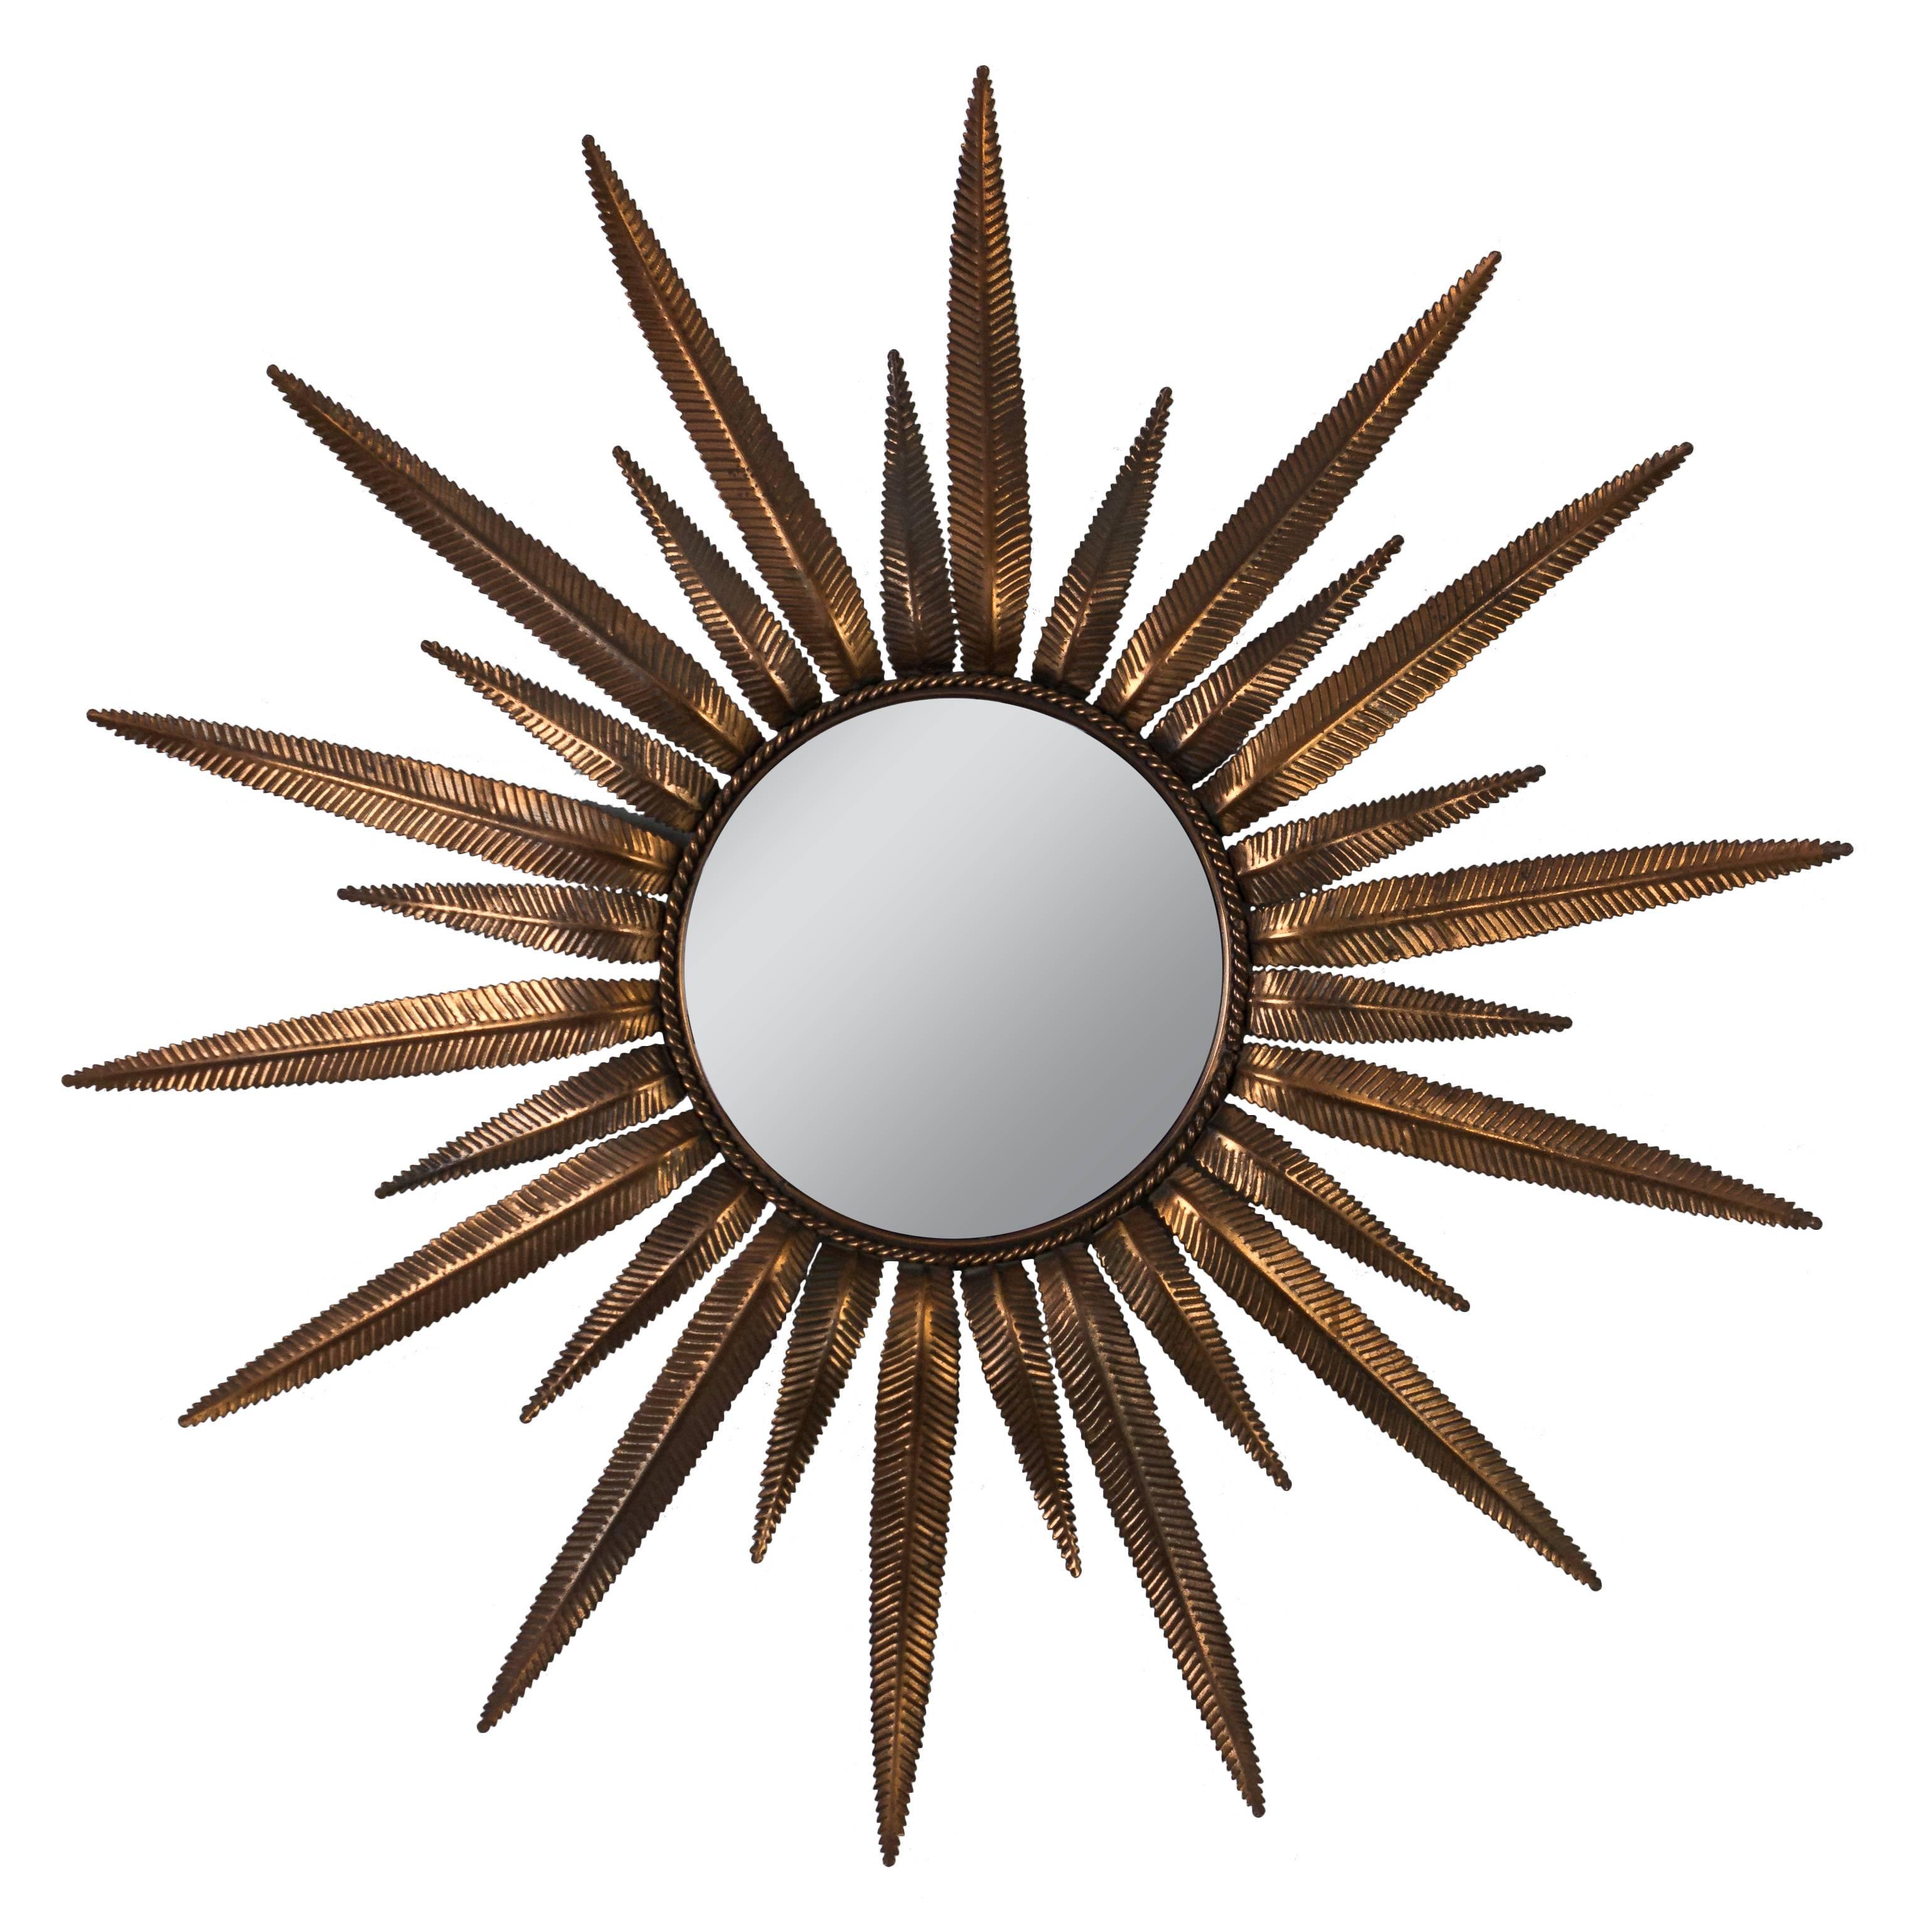  Miroir soleil en métal cuivré espagnol avec cadre en feuilles de Fern